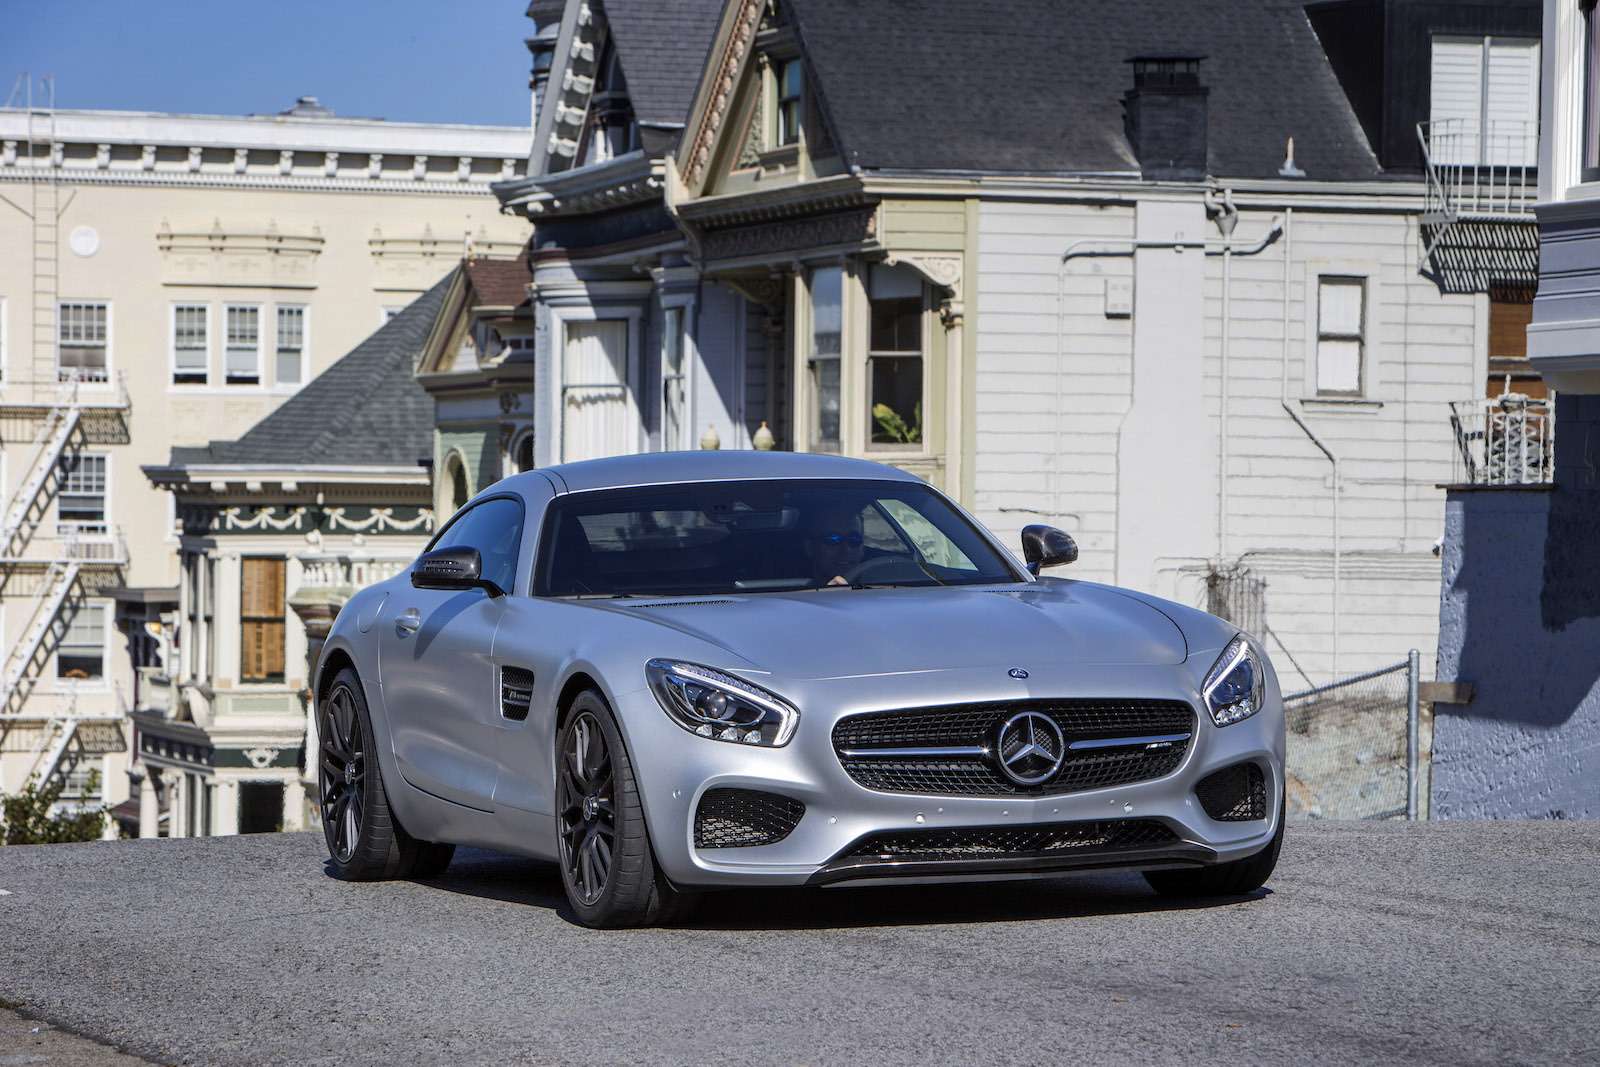 В Нью-Йорке «Всемирным автомобилем года 2015» признан Mercedes-Benz C-класс